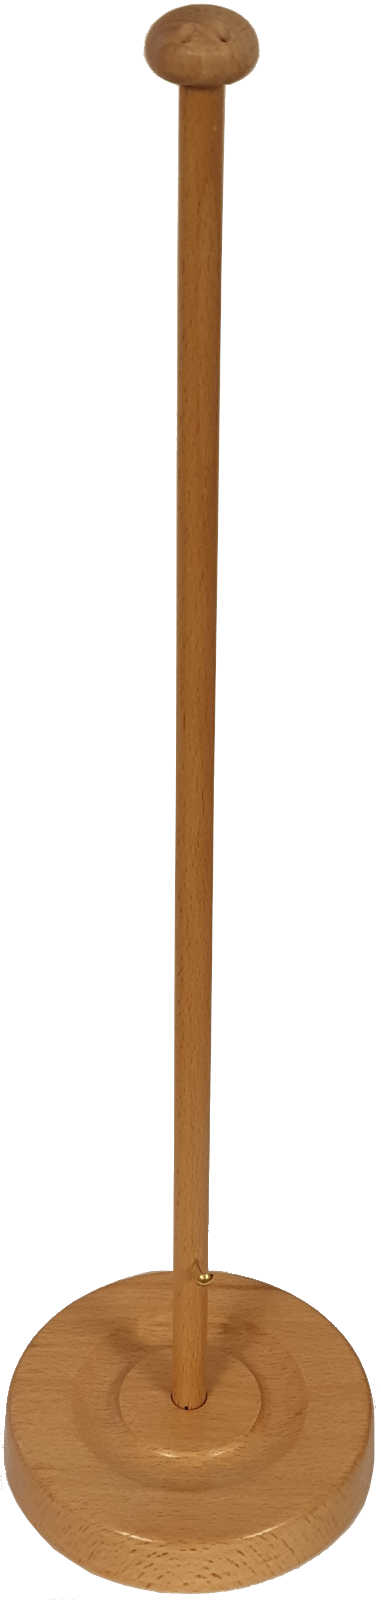 Tischflaggenständer Holz naturhell Rillenfuß 11 cm